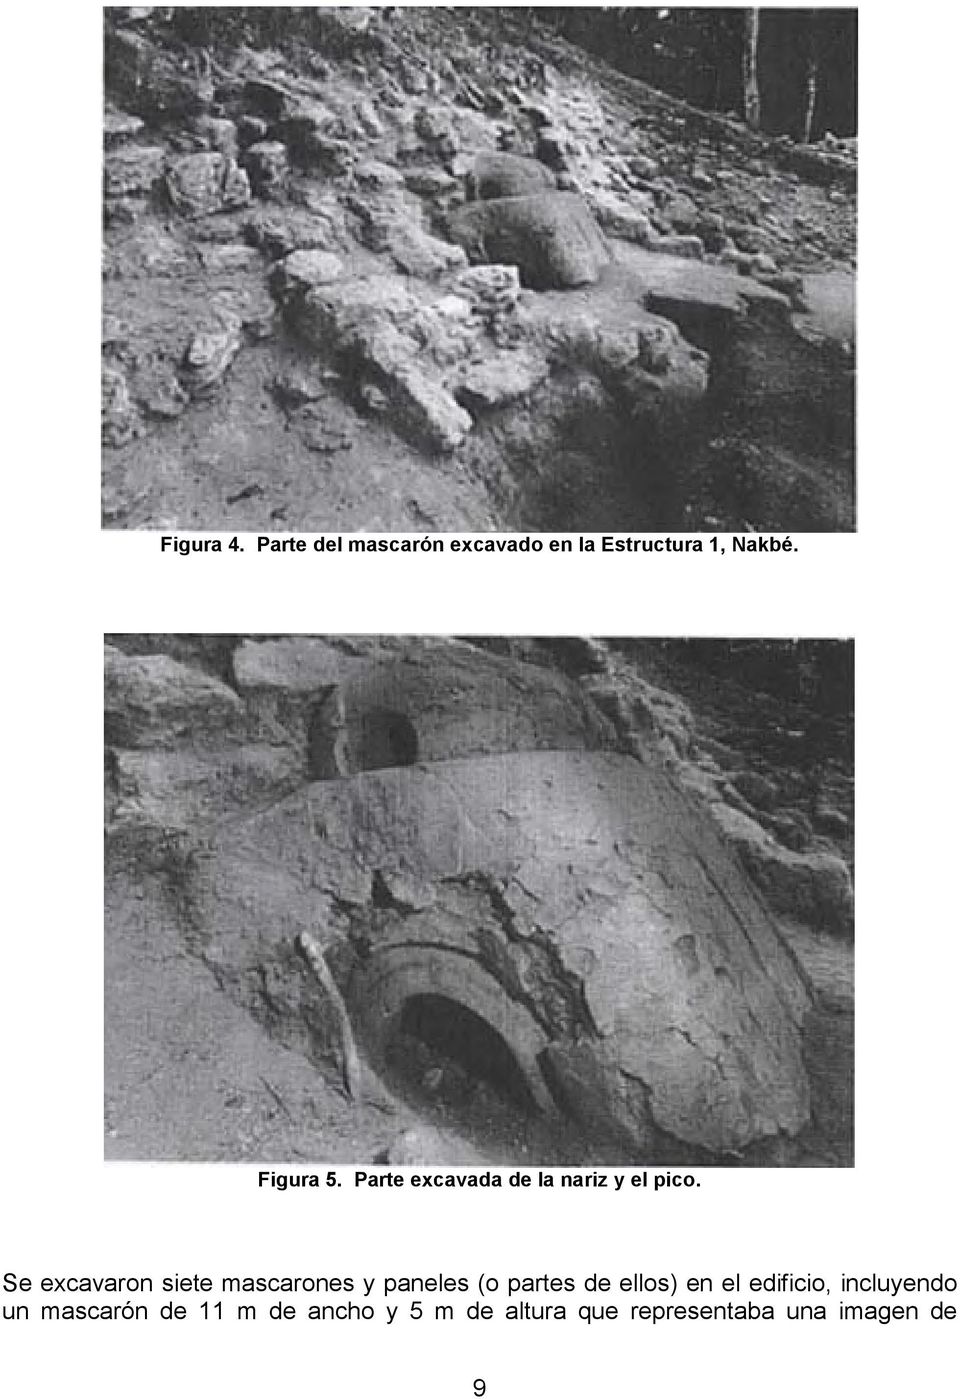 Se excavaron siete mascarones y paneles (o partes de ellos) en el